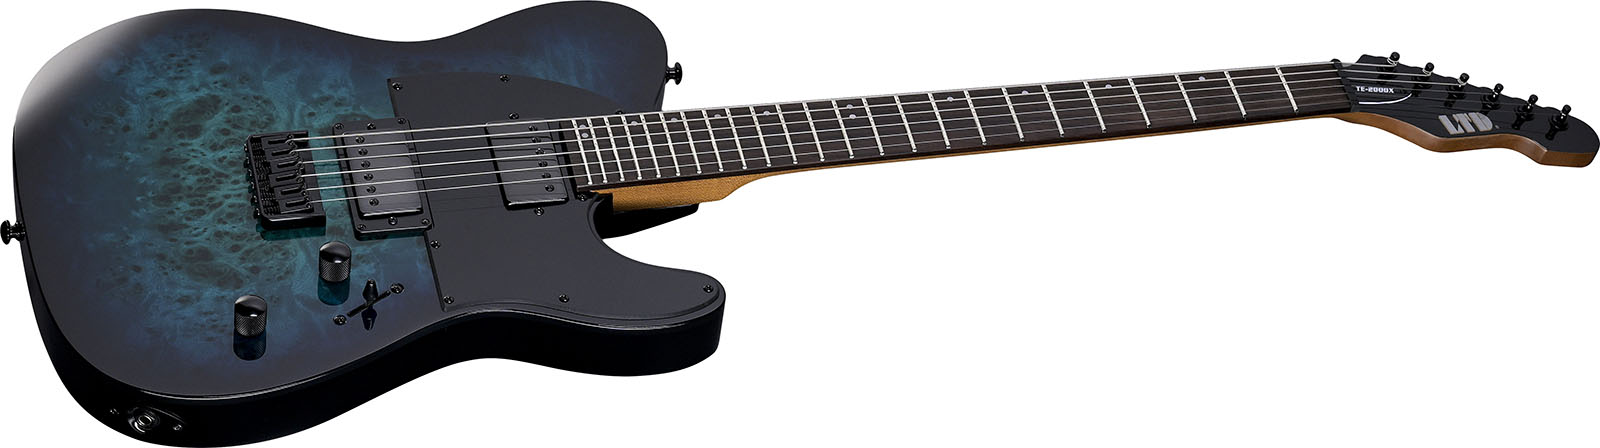 Ltd Te200dx 2h Ht Rw - Blue Burst - Televorm elektrische gitaar - Variation 2